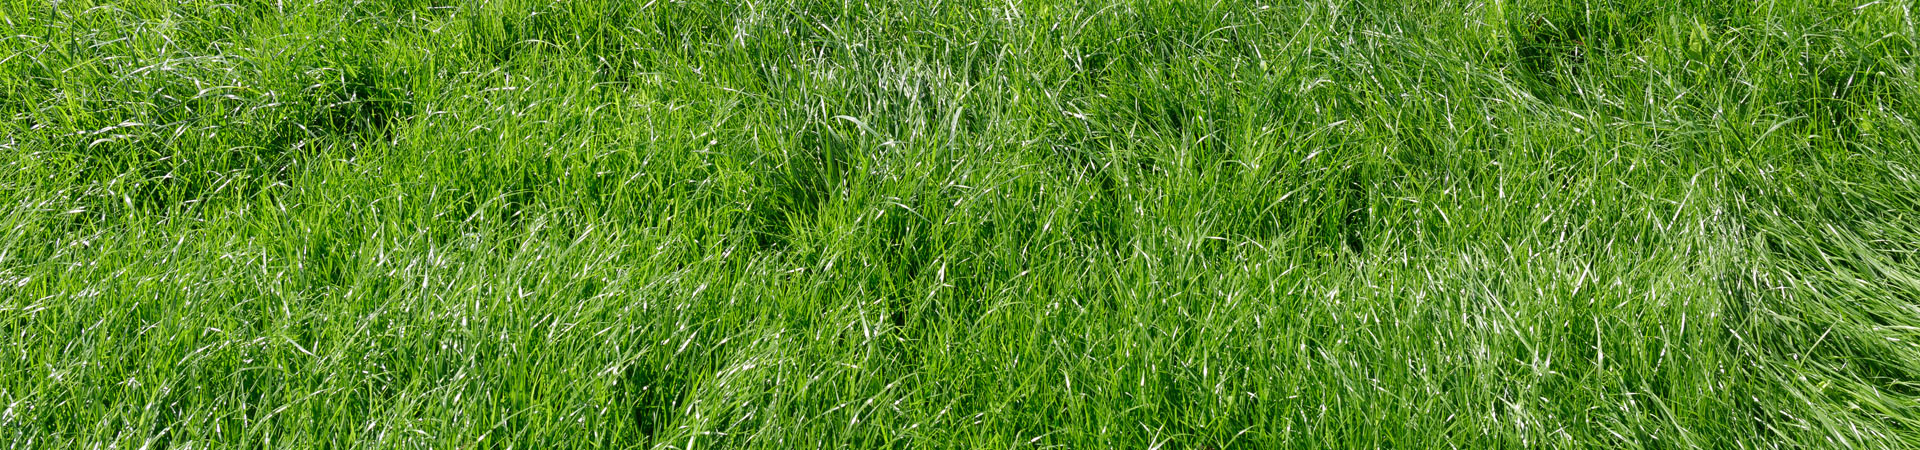 Lawn fertilization service in Binghamton NY